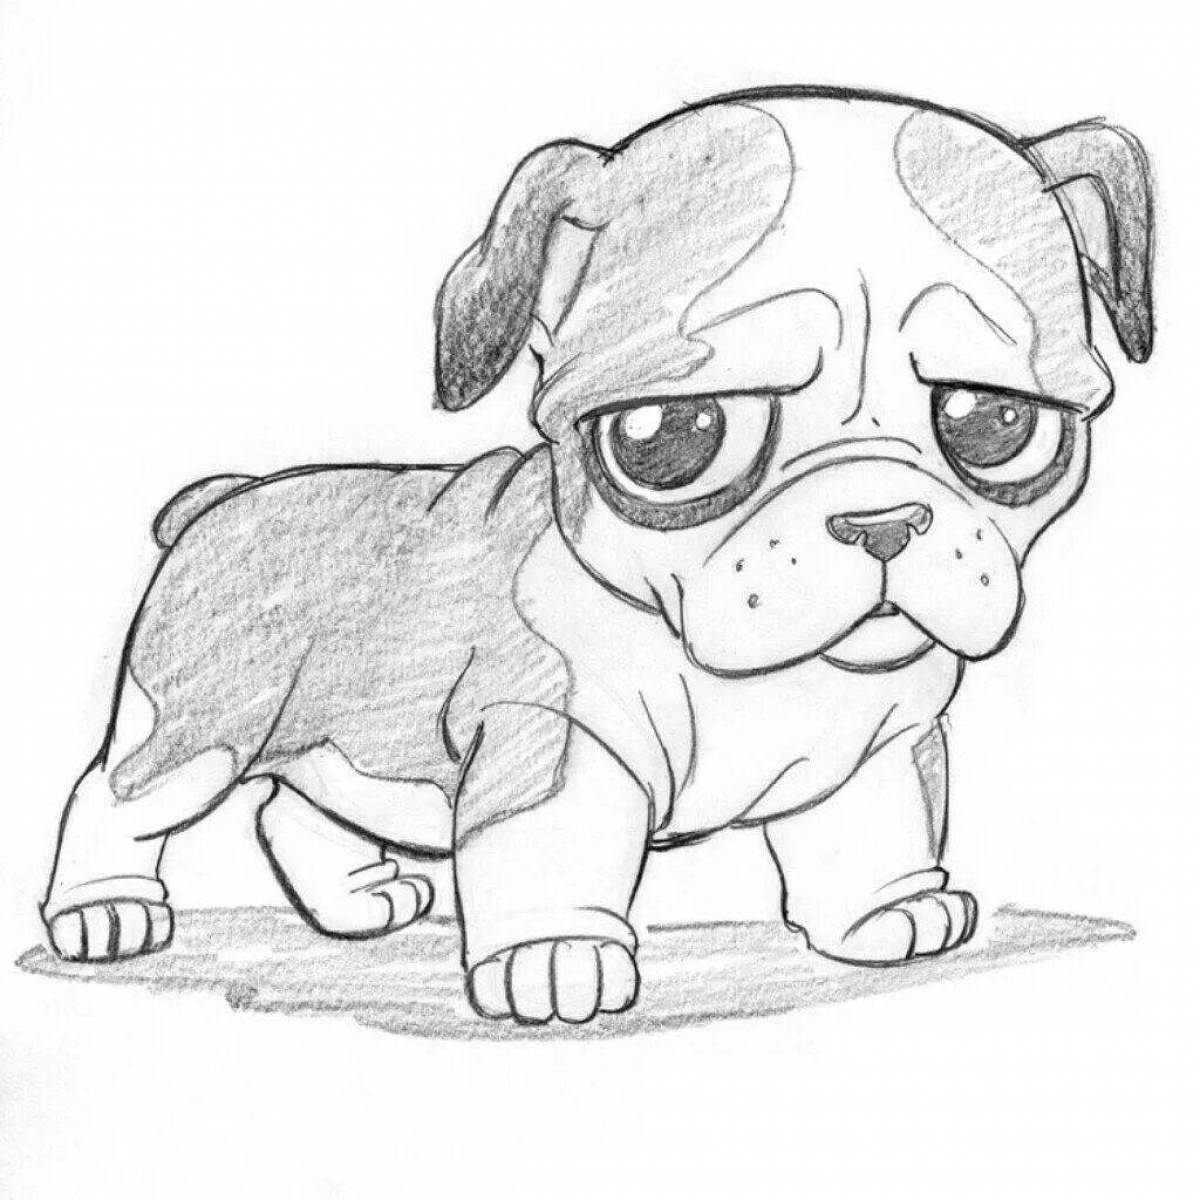 Картинки чтоб срисовывать. Рисунок собаки для срисовки. Рисунки собак для срисовки лёгкие. Рисунок щенка для срисовки. Картинки собак для срисовки.